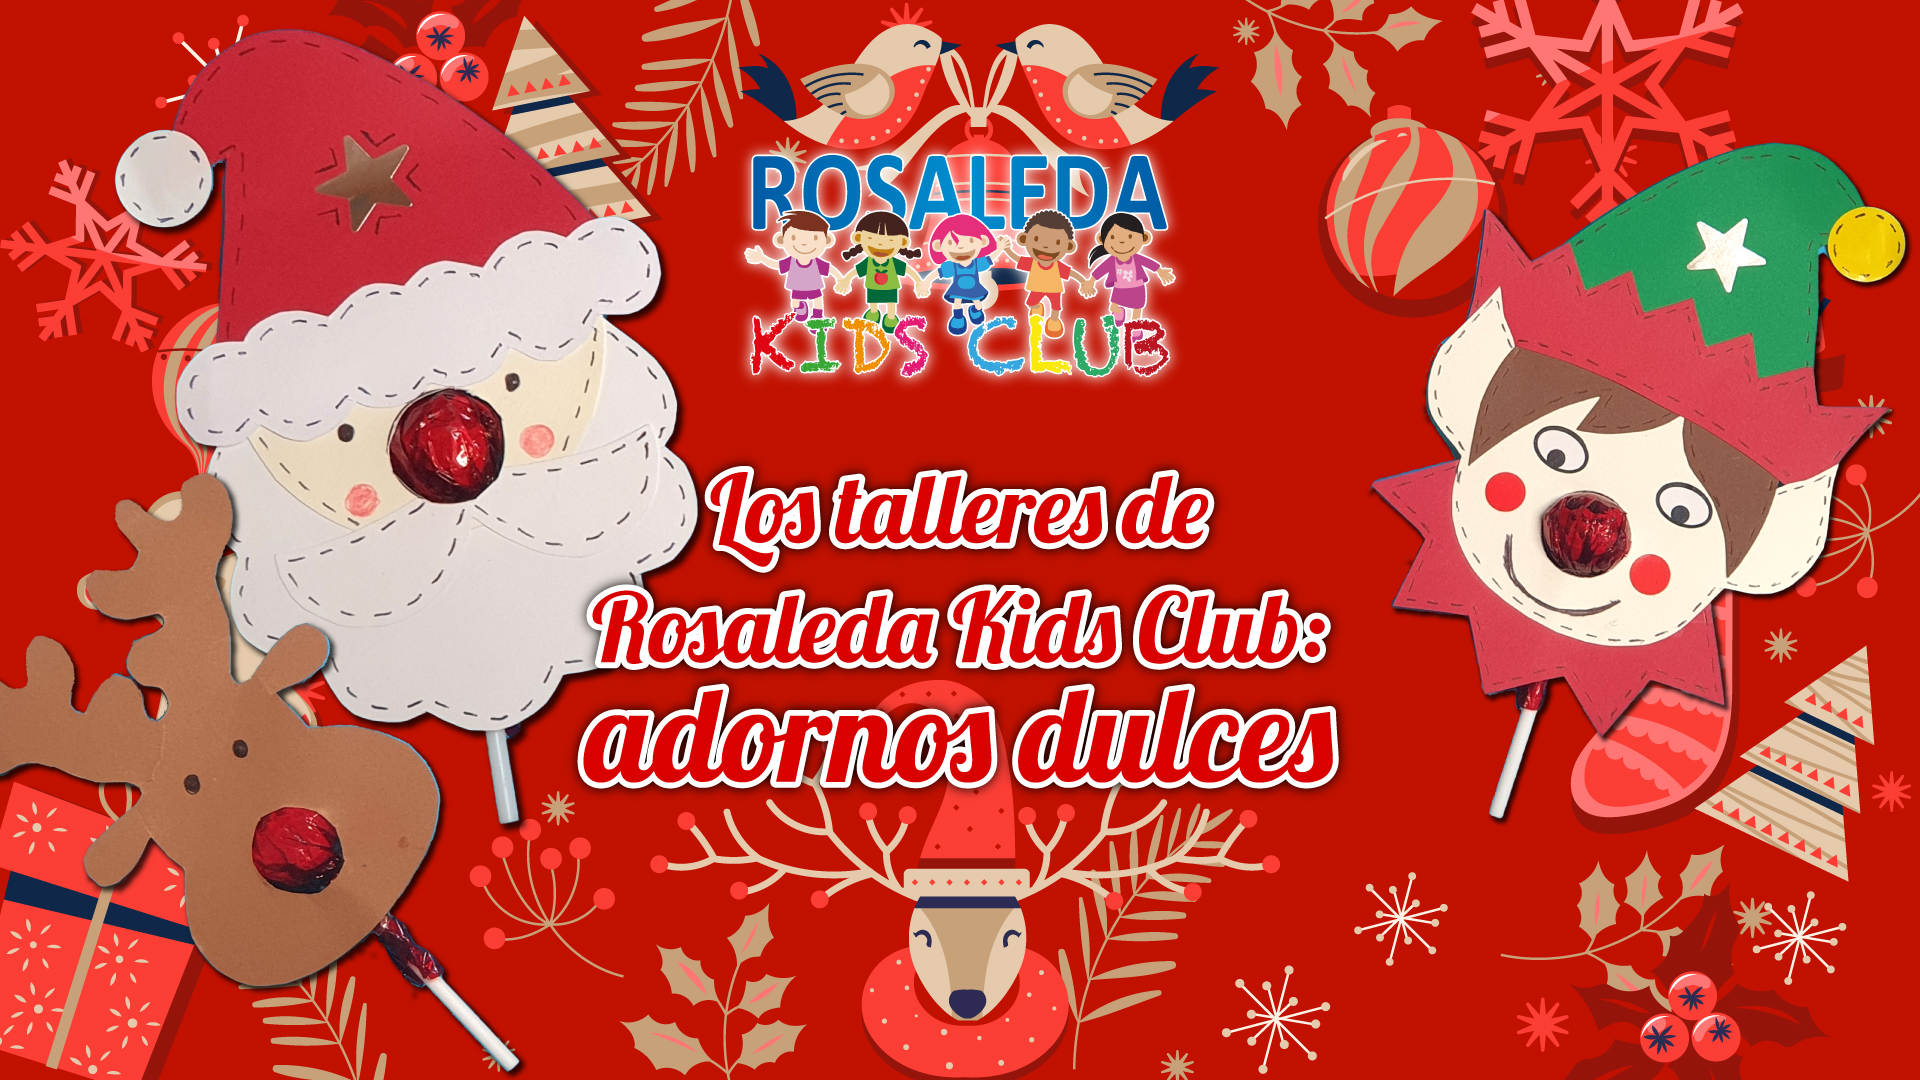 Los talleres de Rosaleda Kids Club: adornos dulces